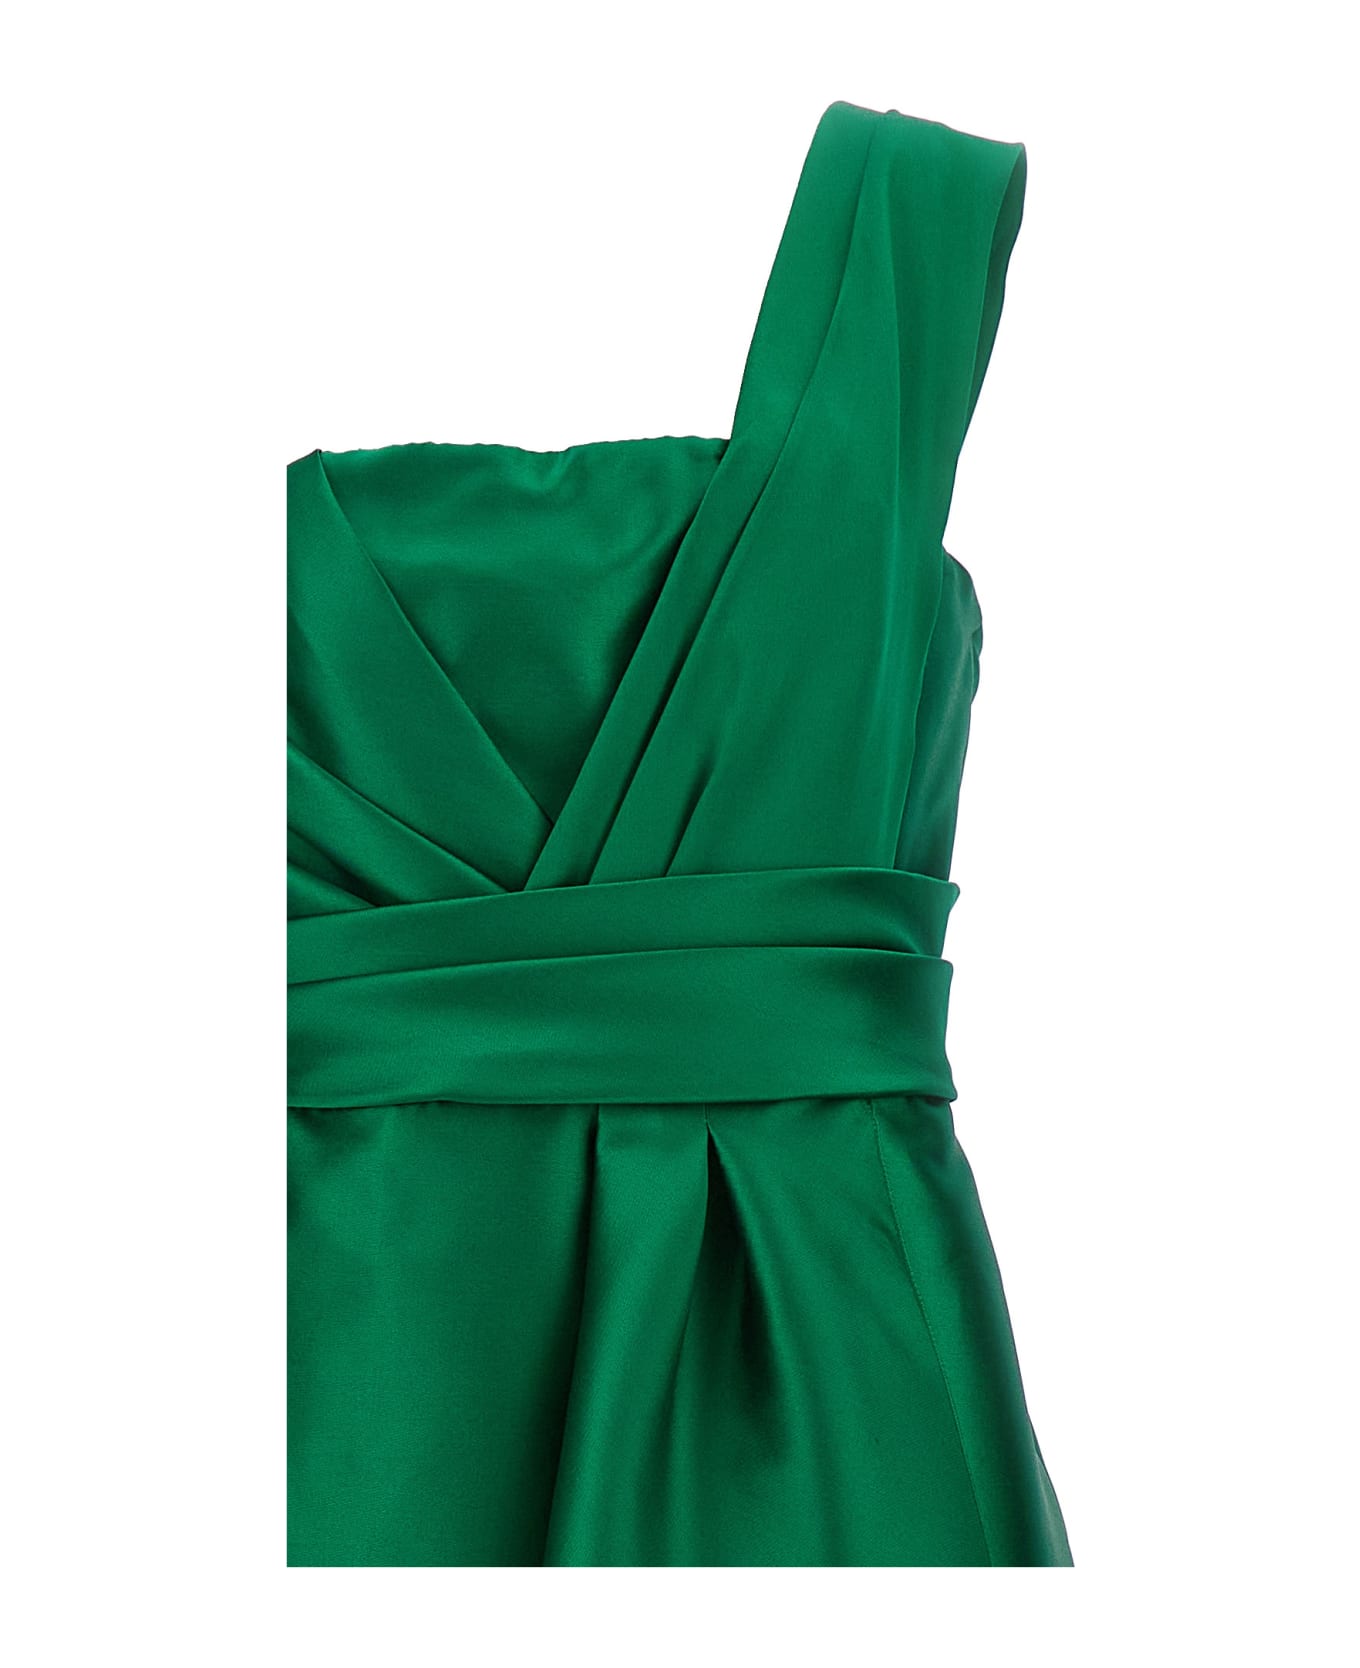 Alberta Ferretti 'mikado' Dress - Green